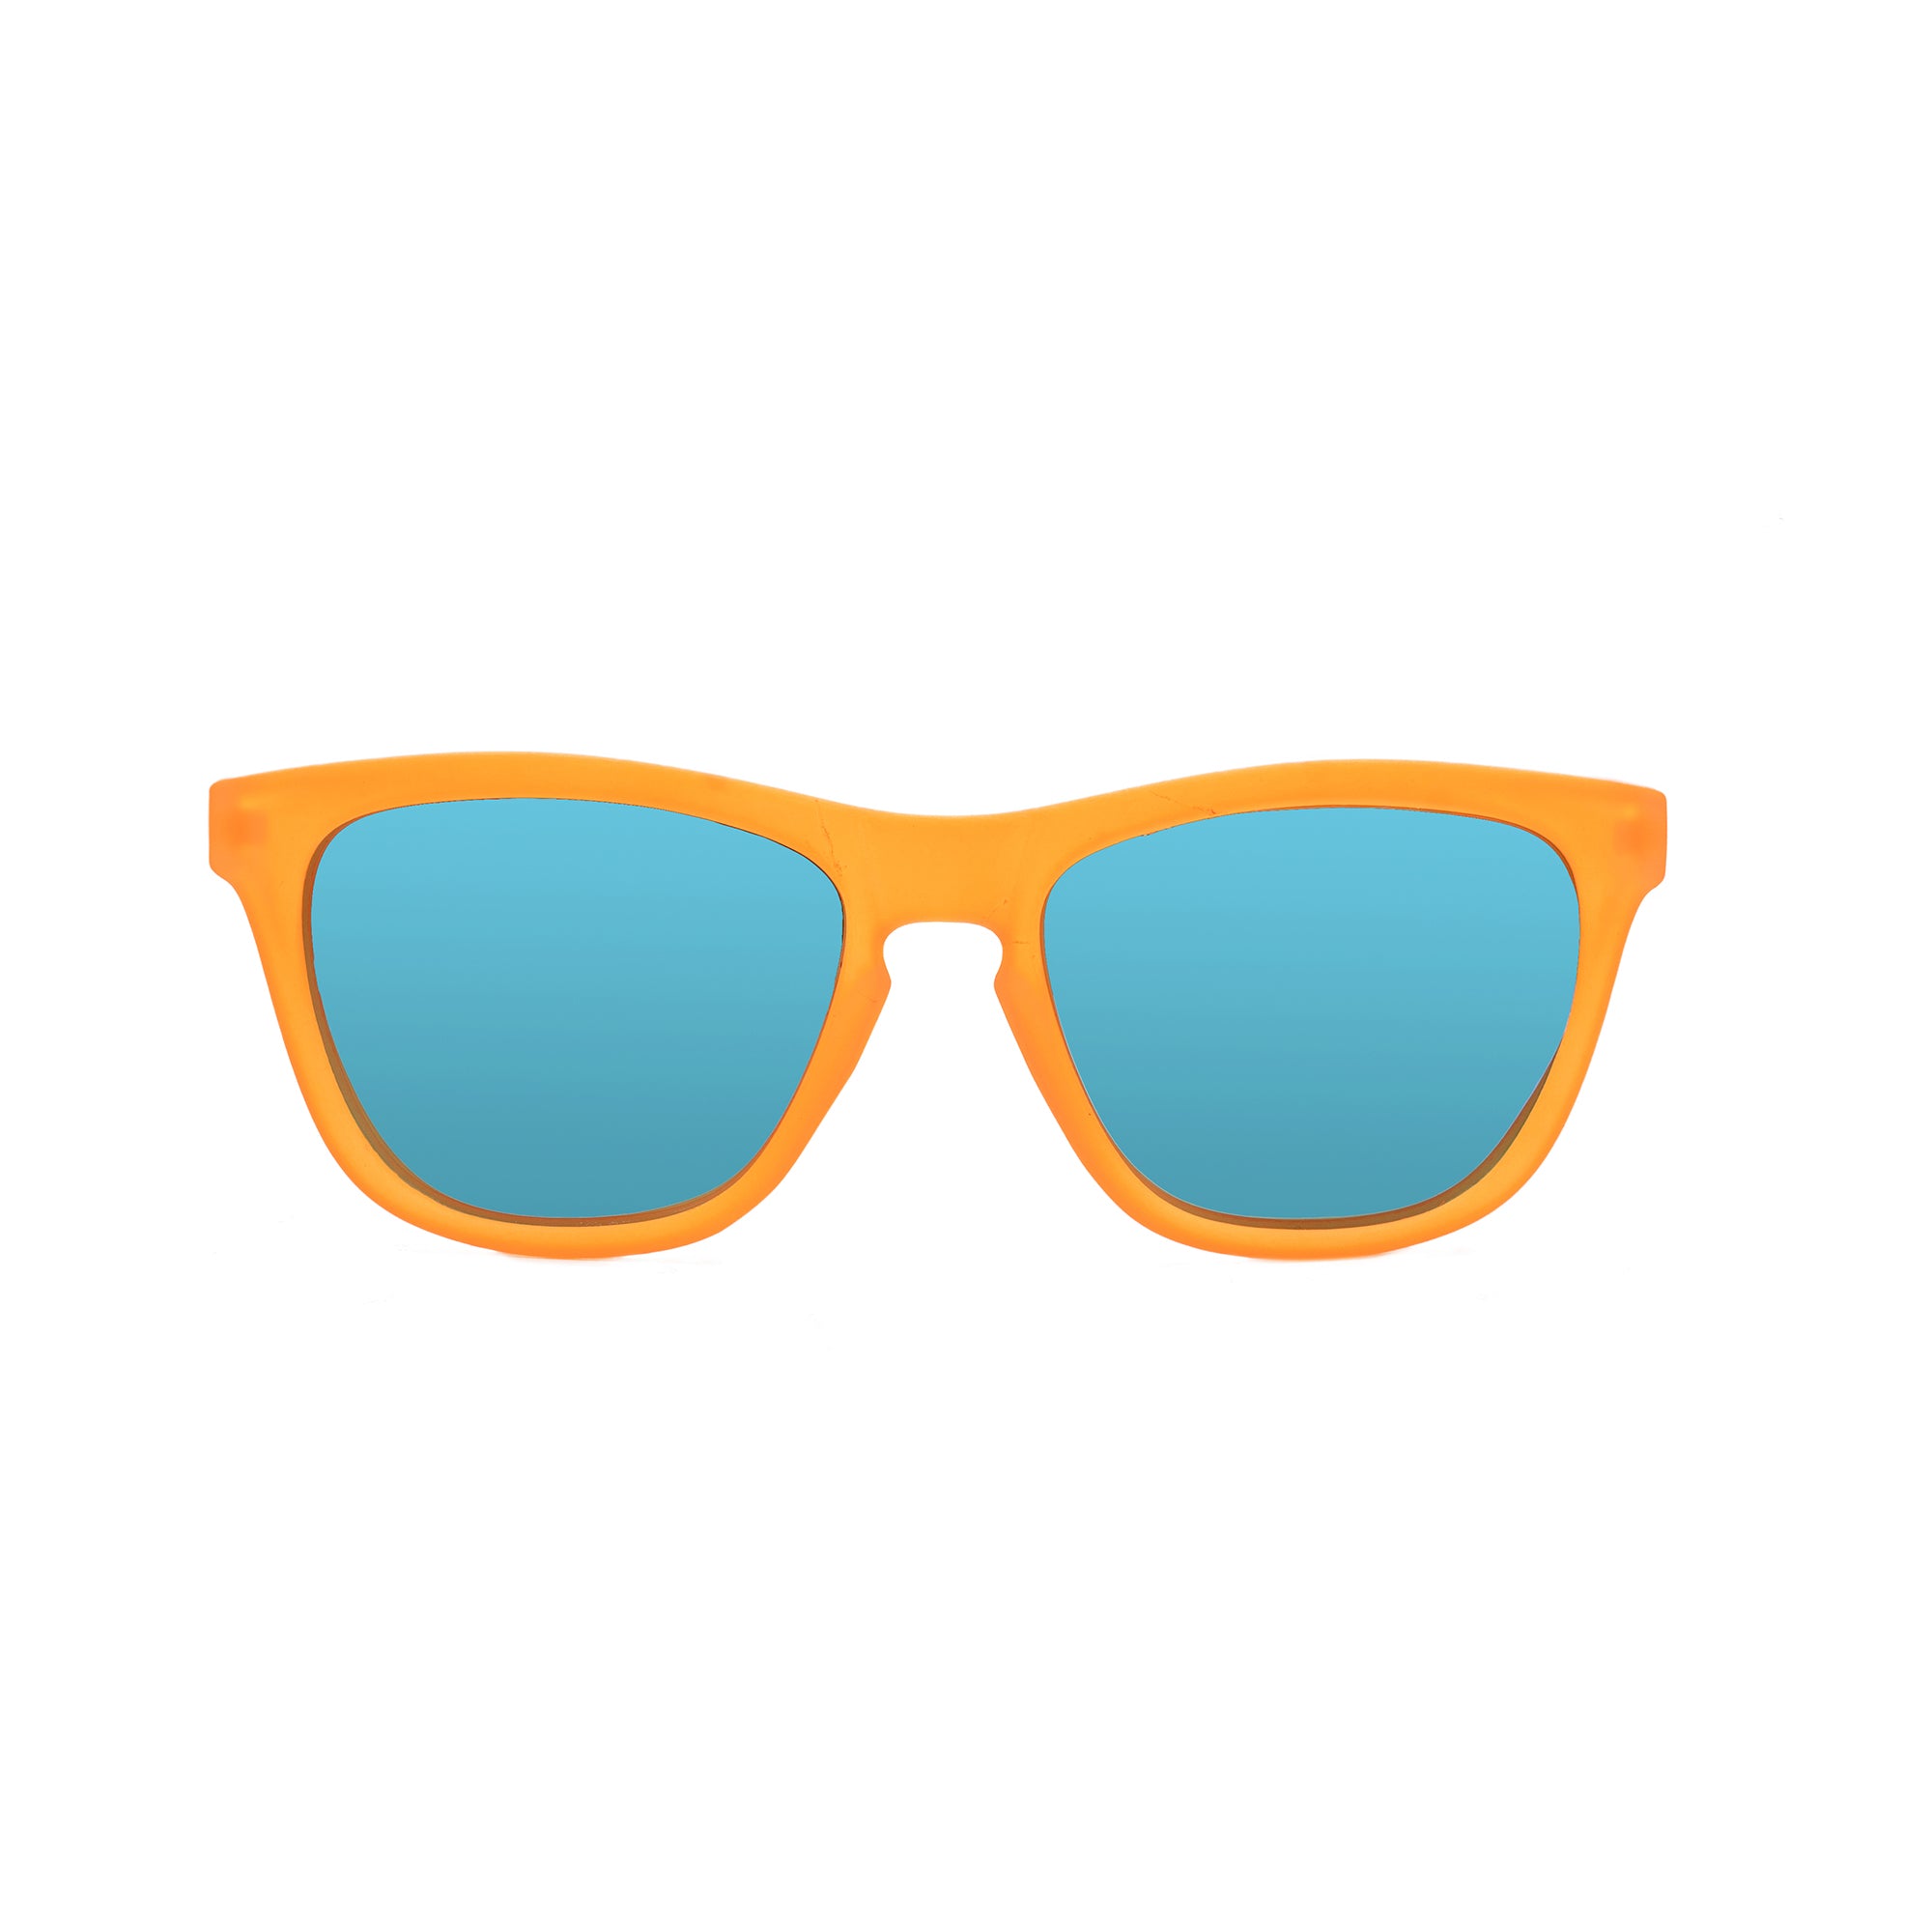 Buy Martian Orange Sunglasses for Men Online | Eyewearlabs